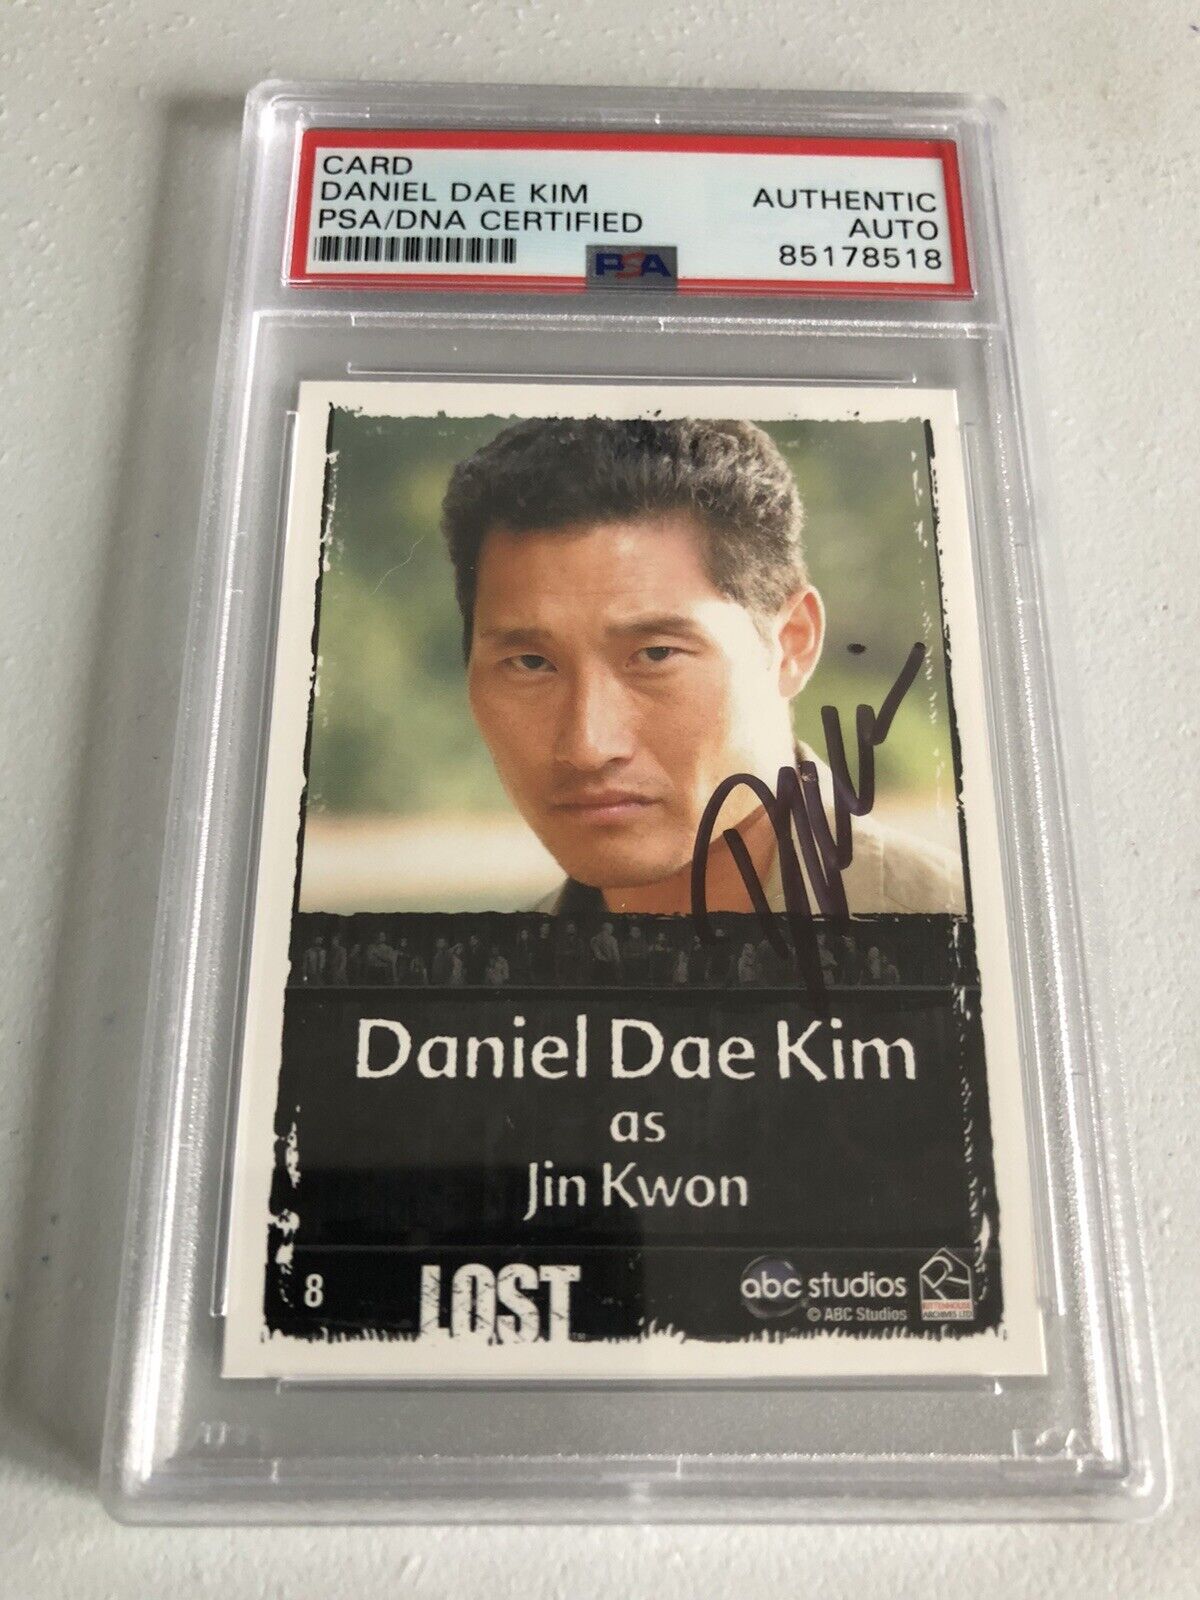 Lost TV Show Daniel Dae Kim PSA Authentic Auto